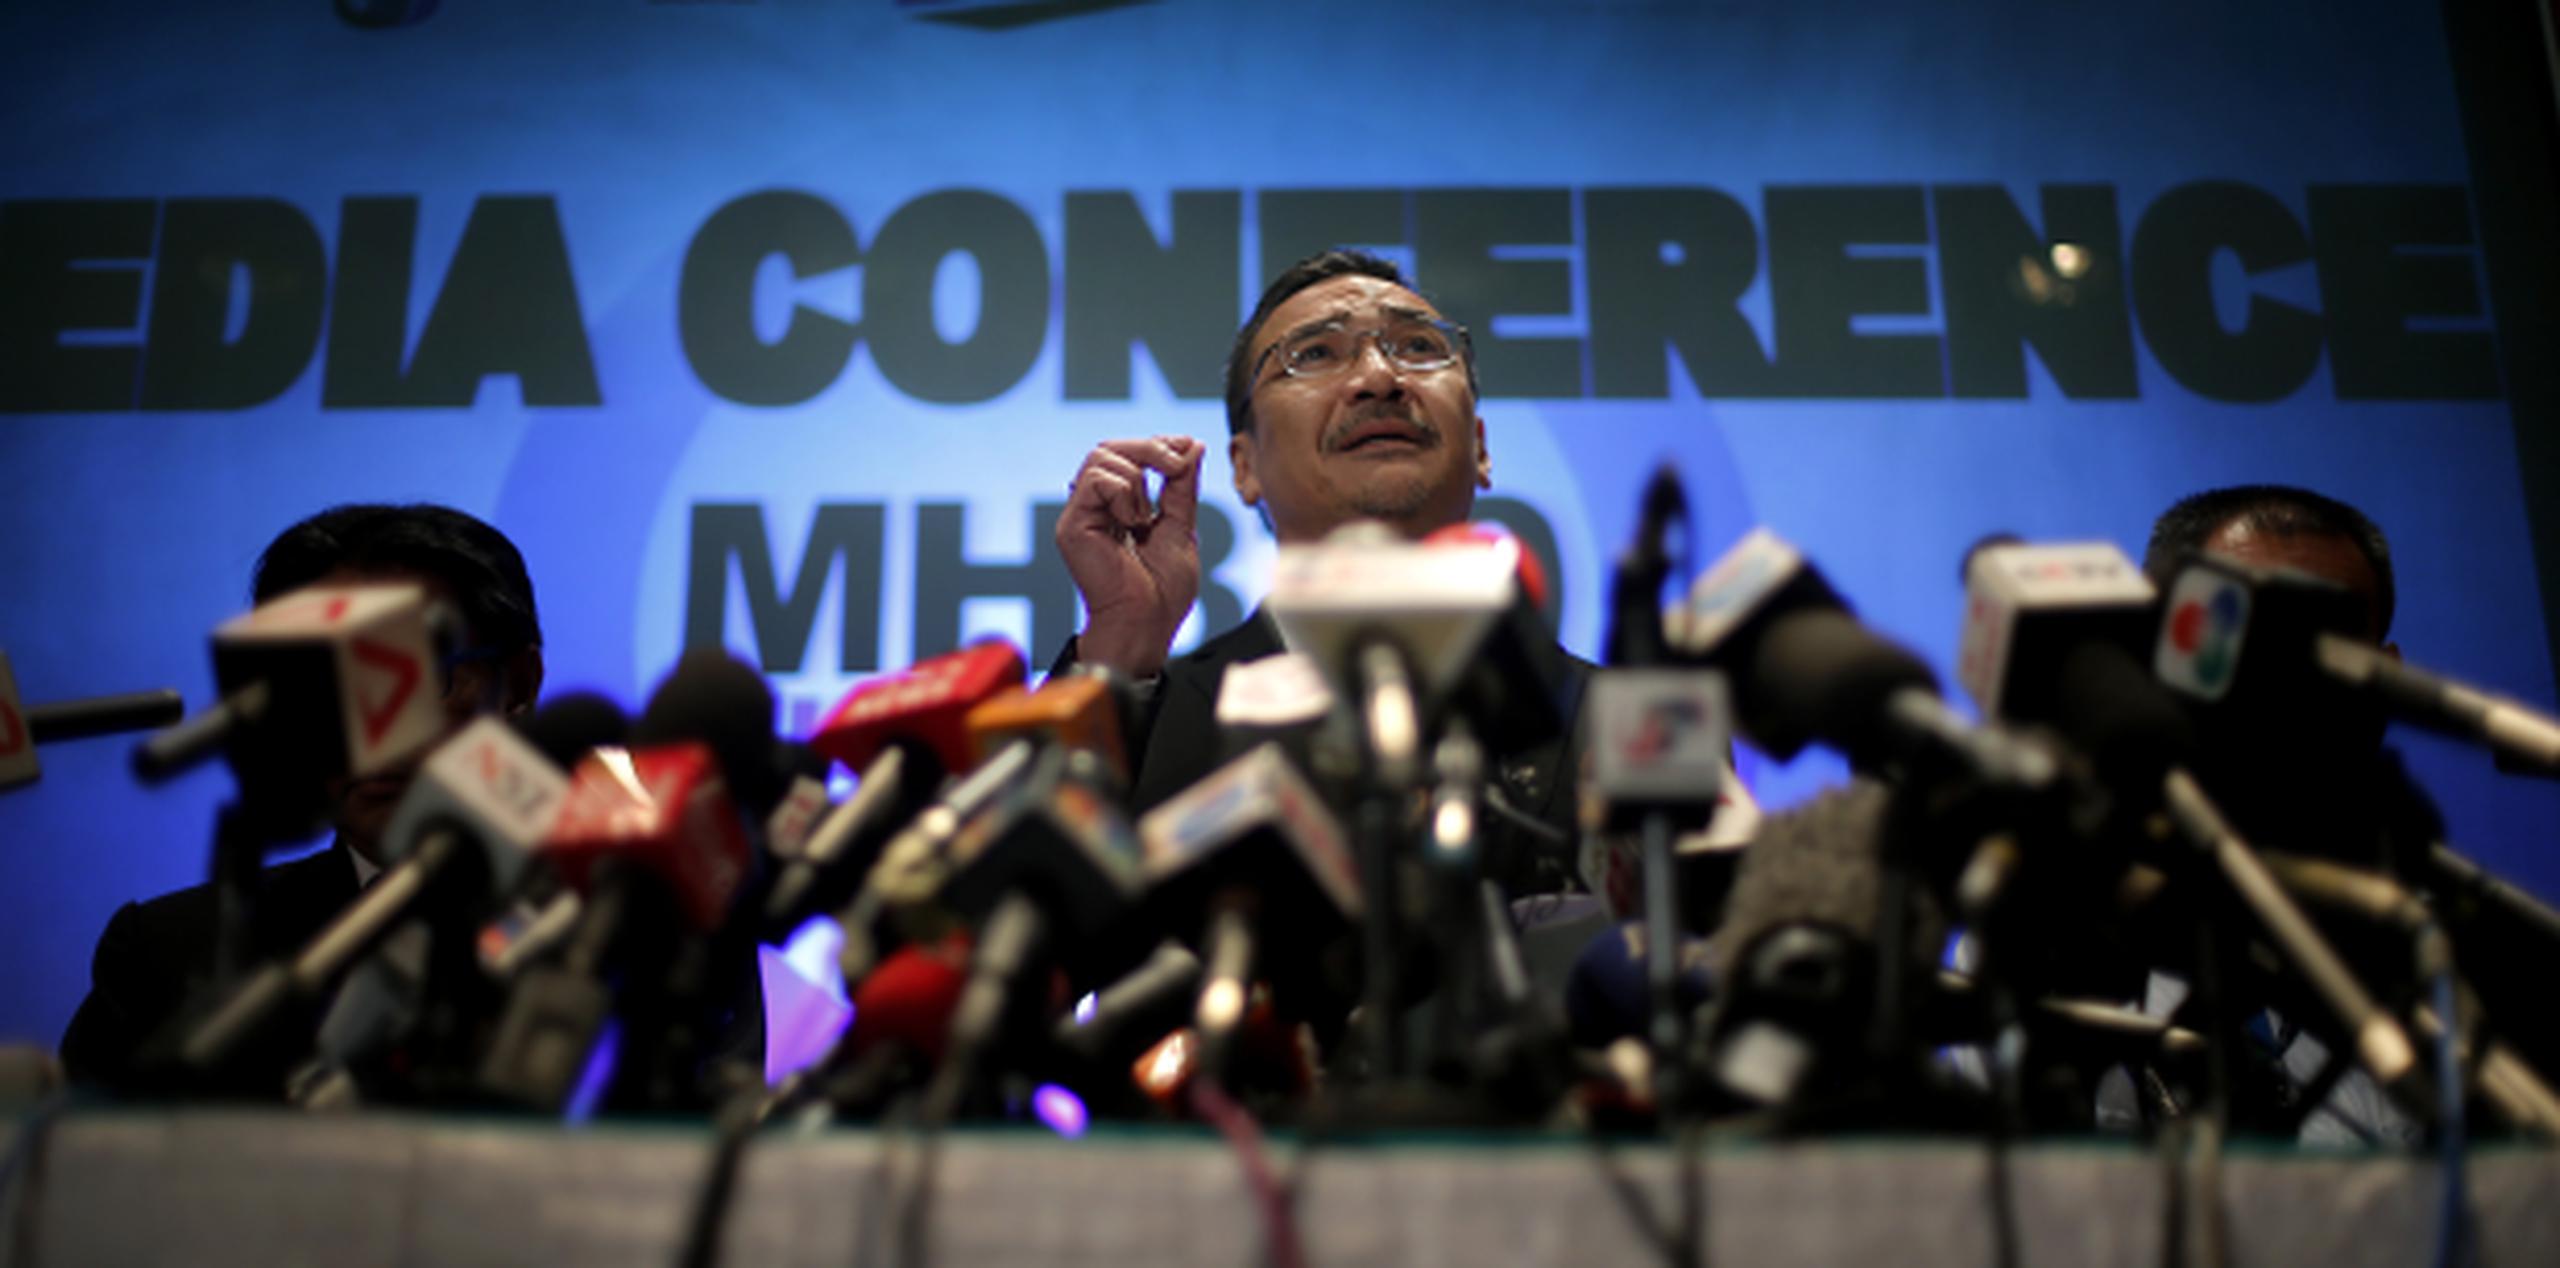 El ministro de Defensa y titular interino de Transporte Hishamuddin Hussein de Malasia contestó preguntas referentes al avión desaparecido de la aereolínea Malaysia durante una conferencia de prensa.(AP)